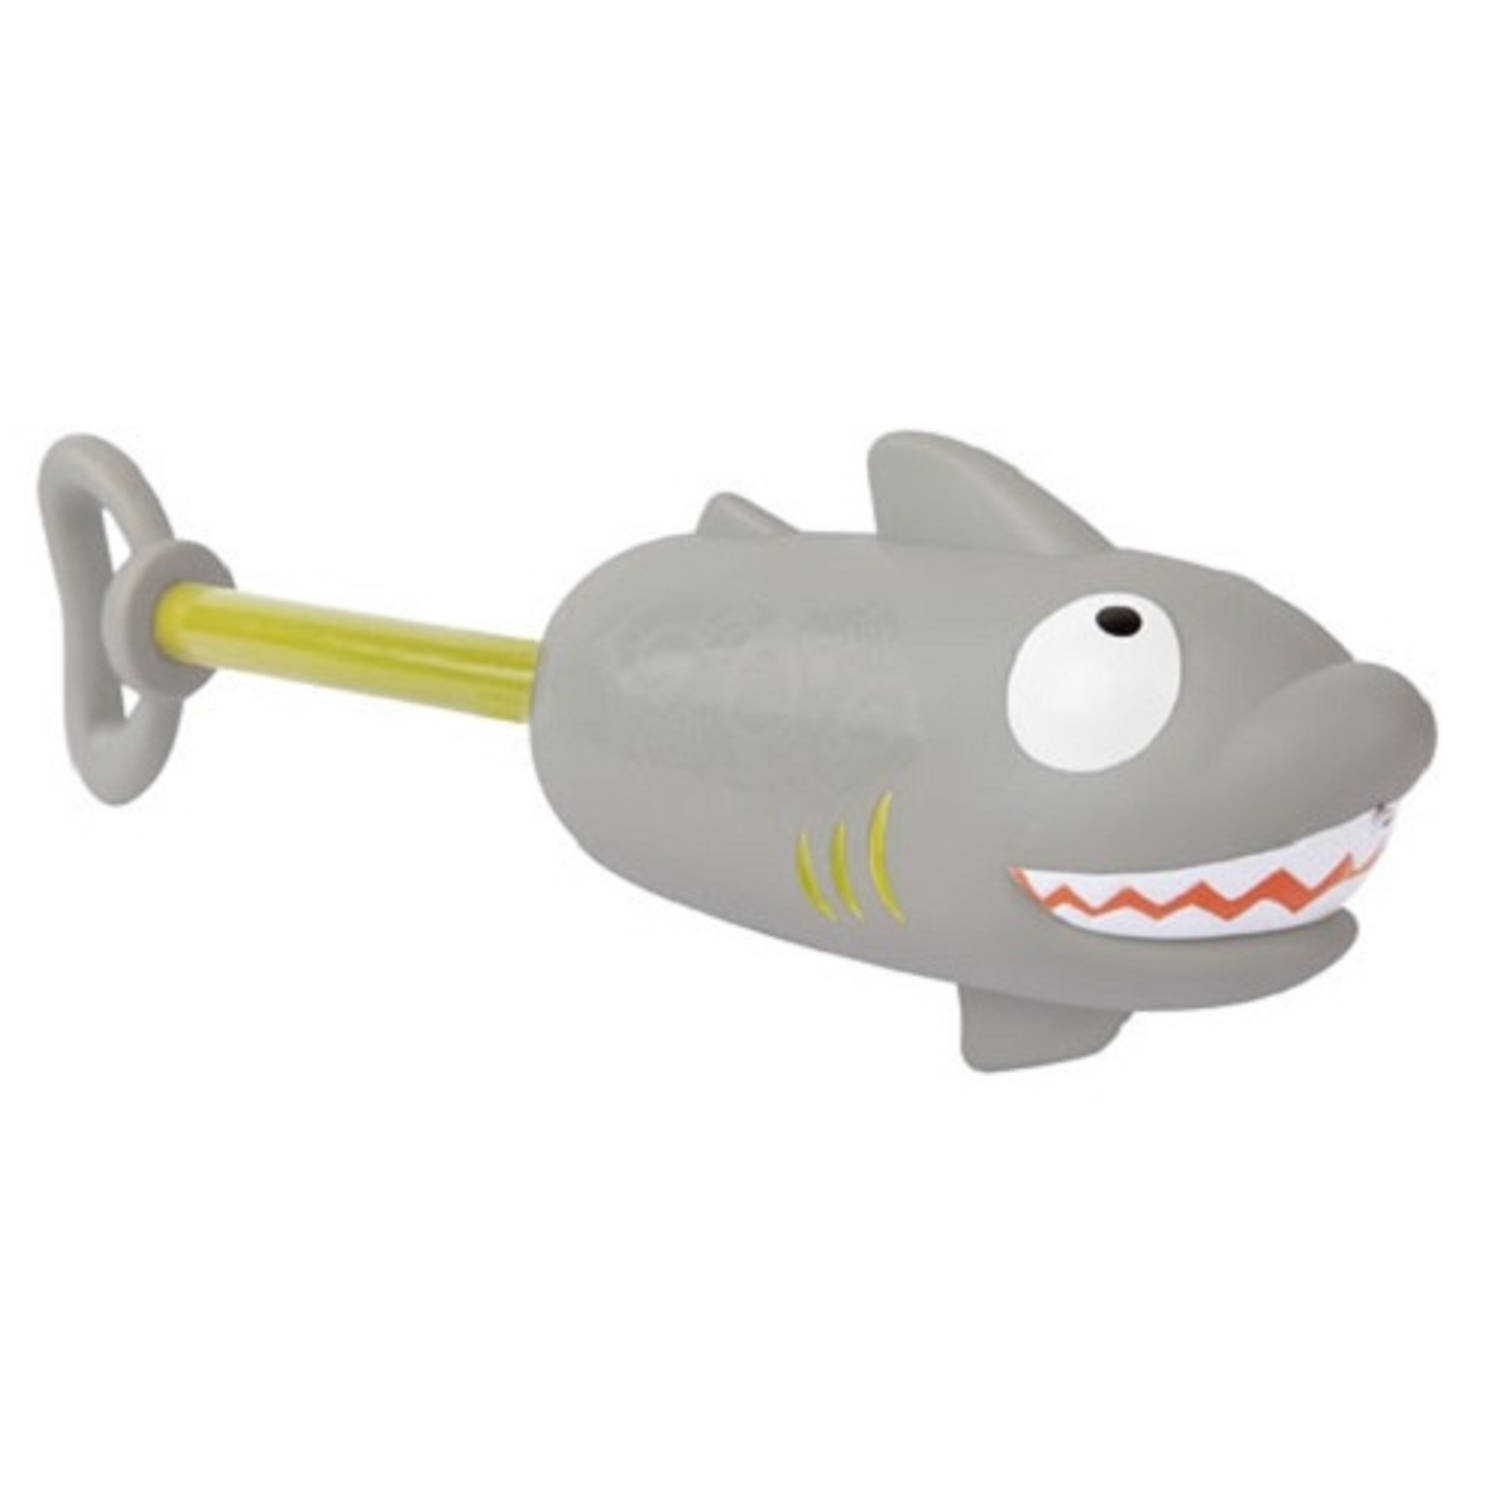 Sunnylife waterpistool haai junior 26 cm grijs/groen